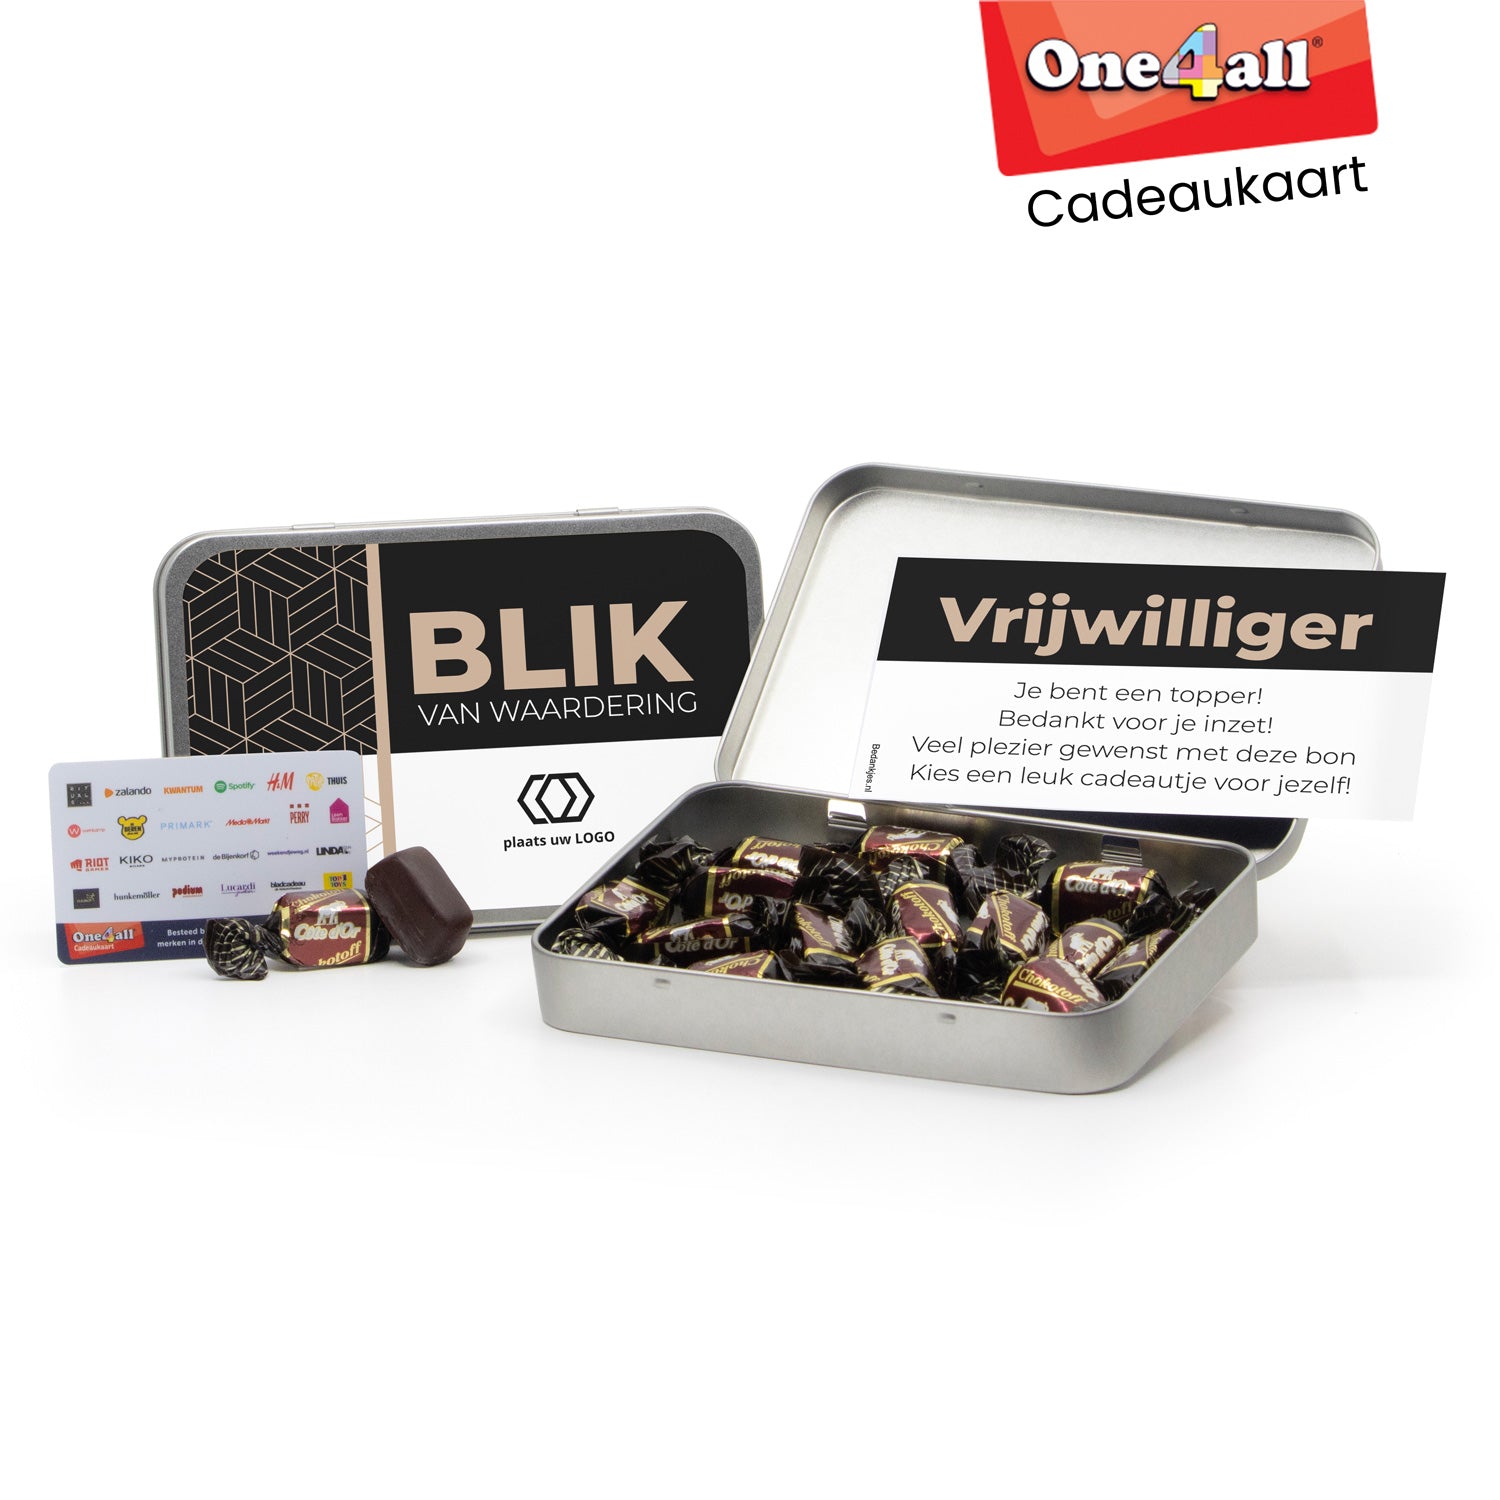 Chokotoff in blik met One4All cadeaukaart - Vrijwilliger - Bedankjes.nl